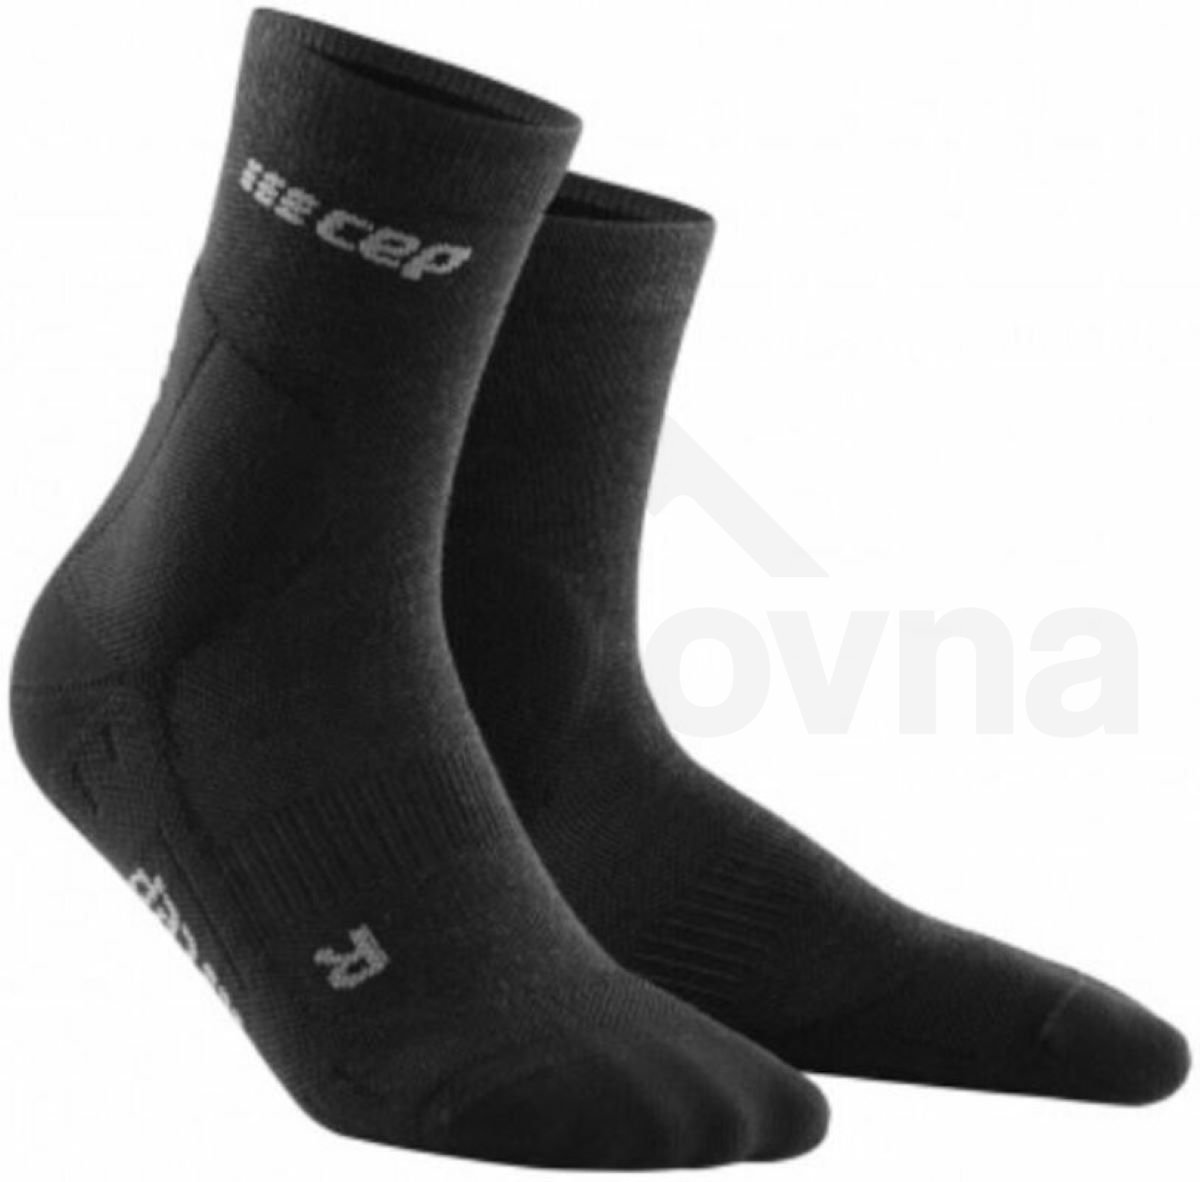 Ponožky CEP Cold Weather M - černá